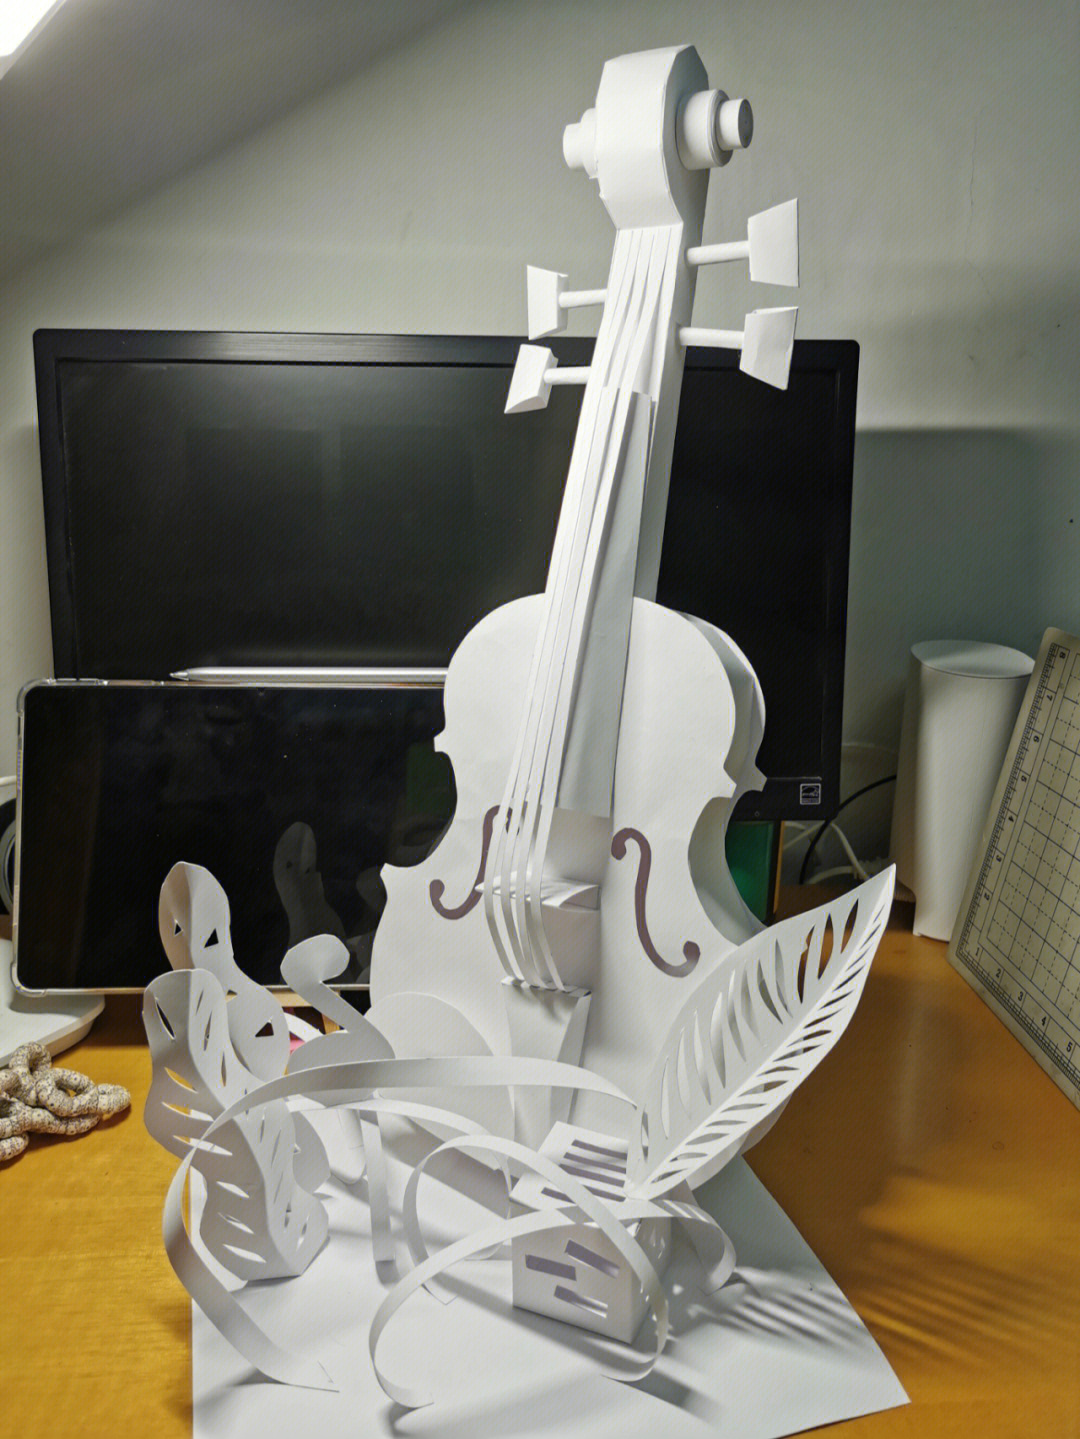 硬纸板制作小提琴步骤图片